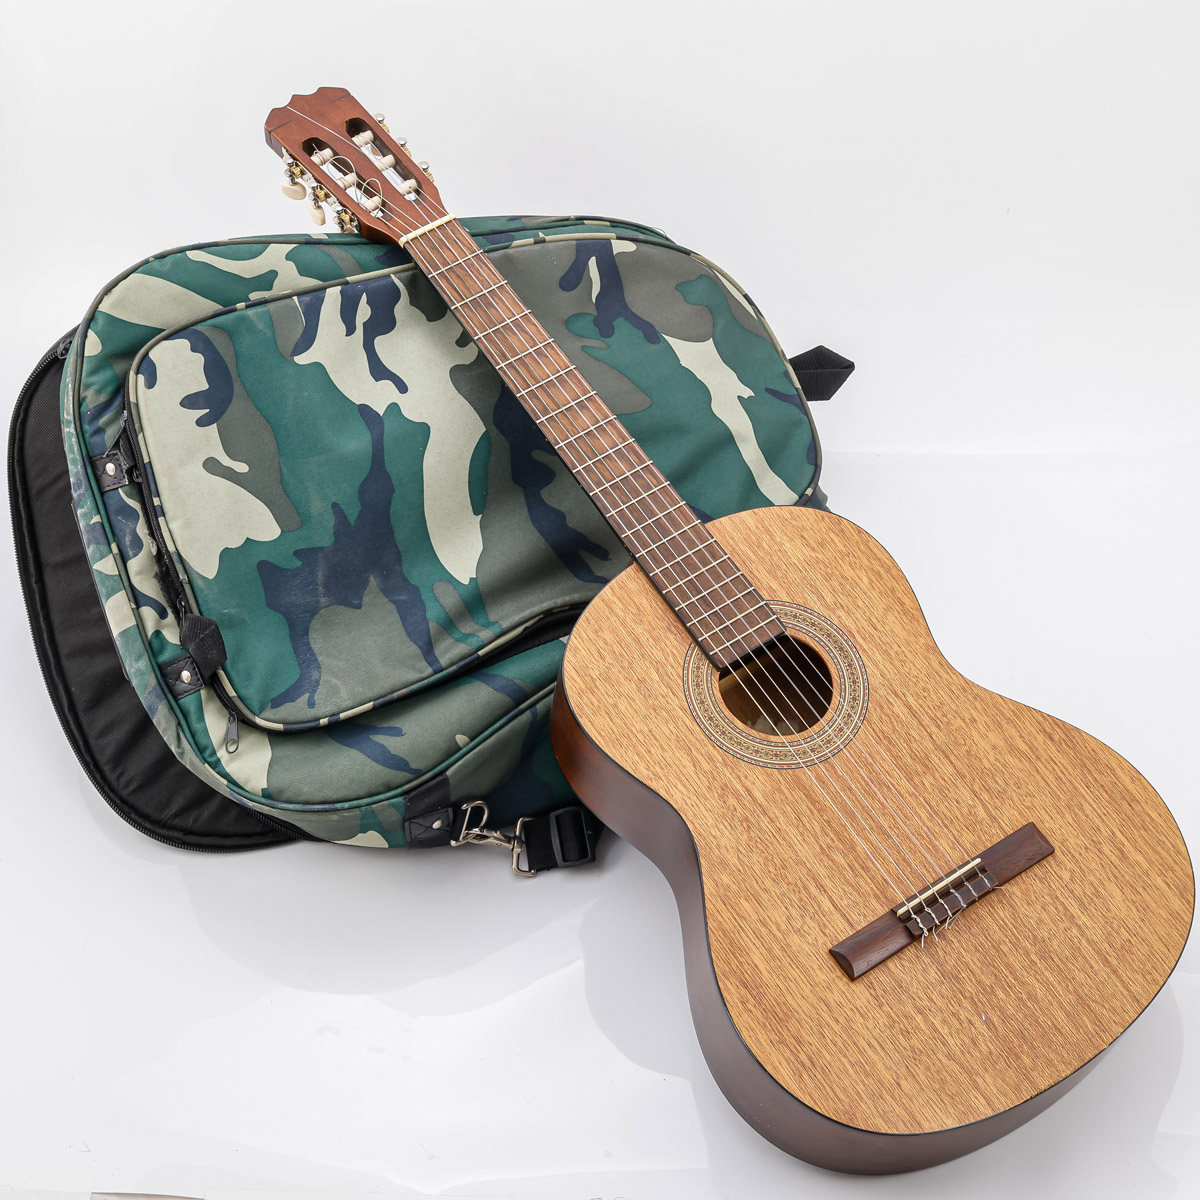 1 Gitarre Hohner HC-15 # 97096502, Gebrauchsspuren, in Tasche